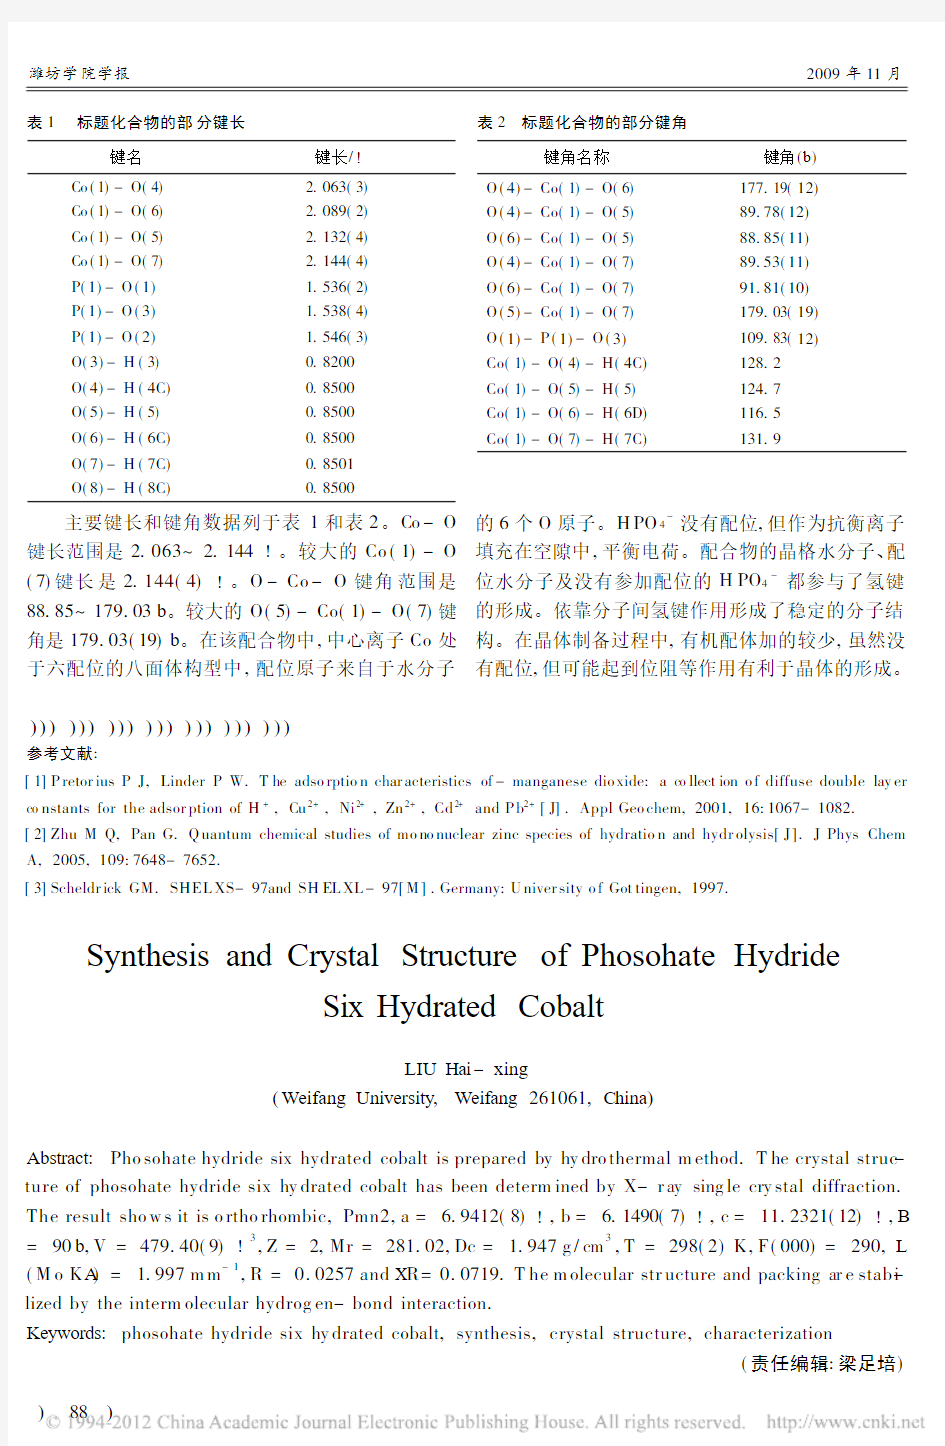 磷酸氢化六水合钴的晶体合成及结构表征